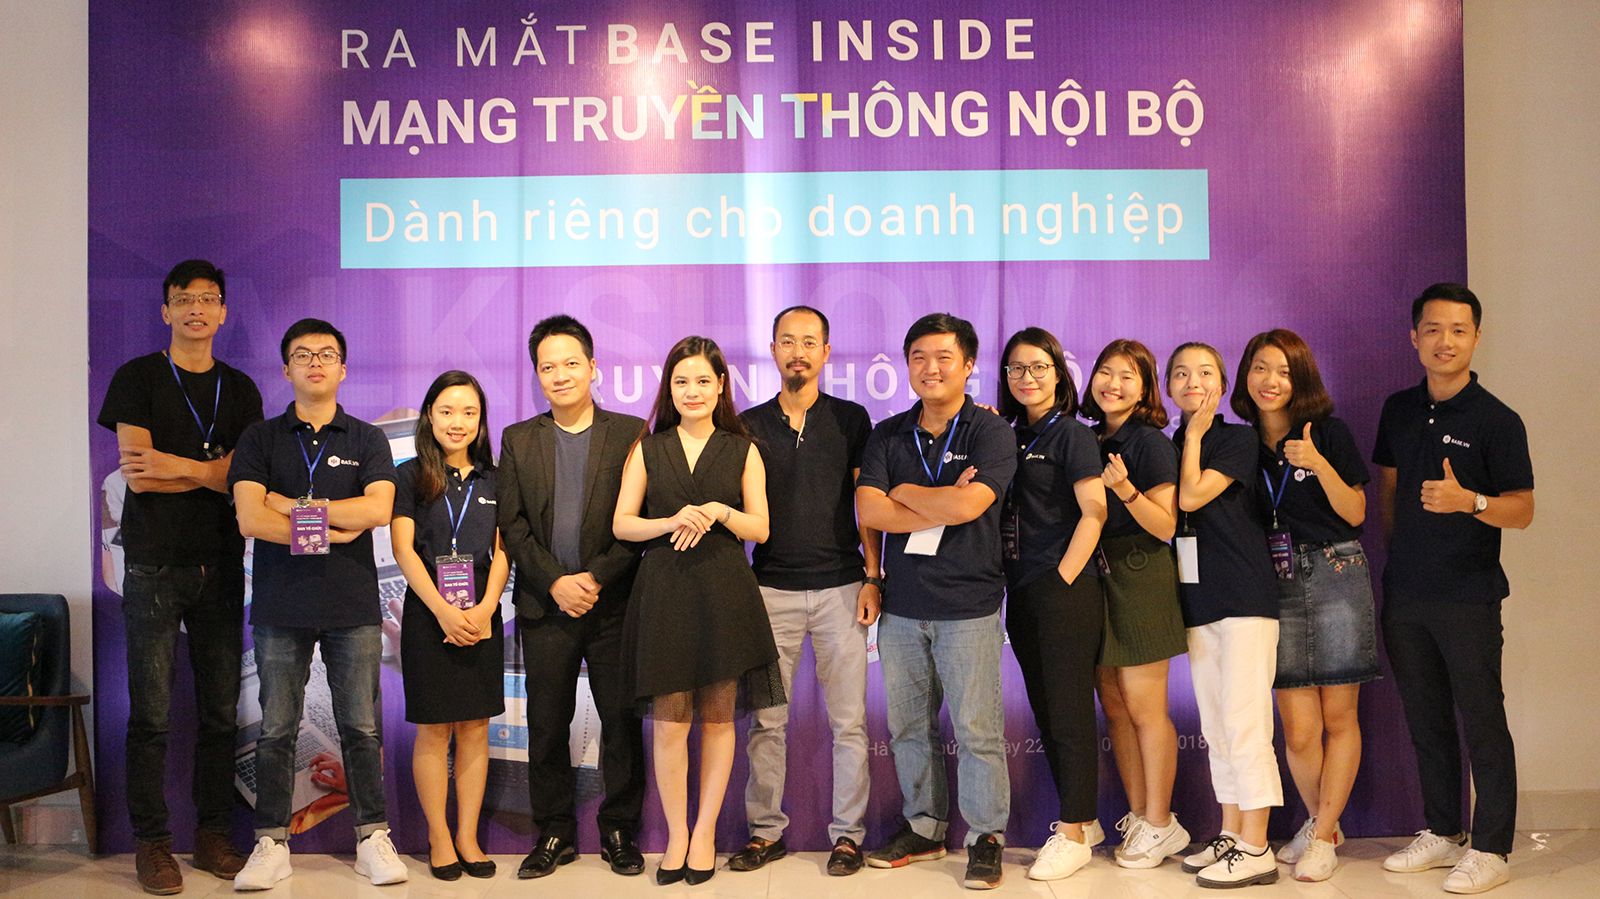 Review về Base Inside - Mạng truyền thông nội bộ đầu tiên tại Việt Nam